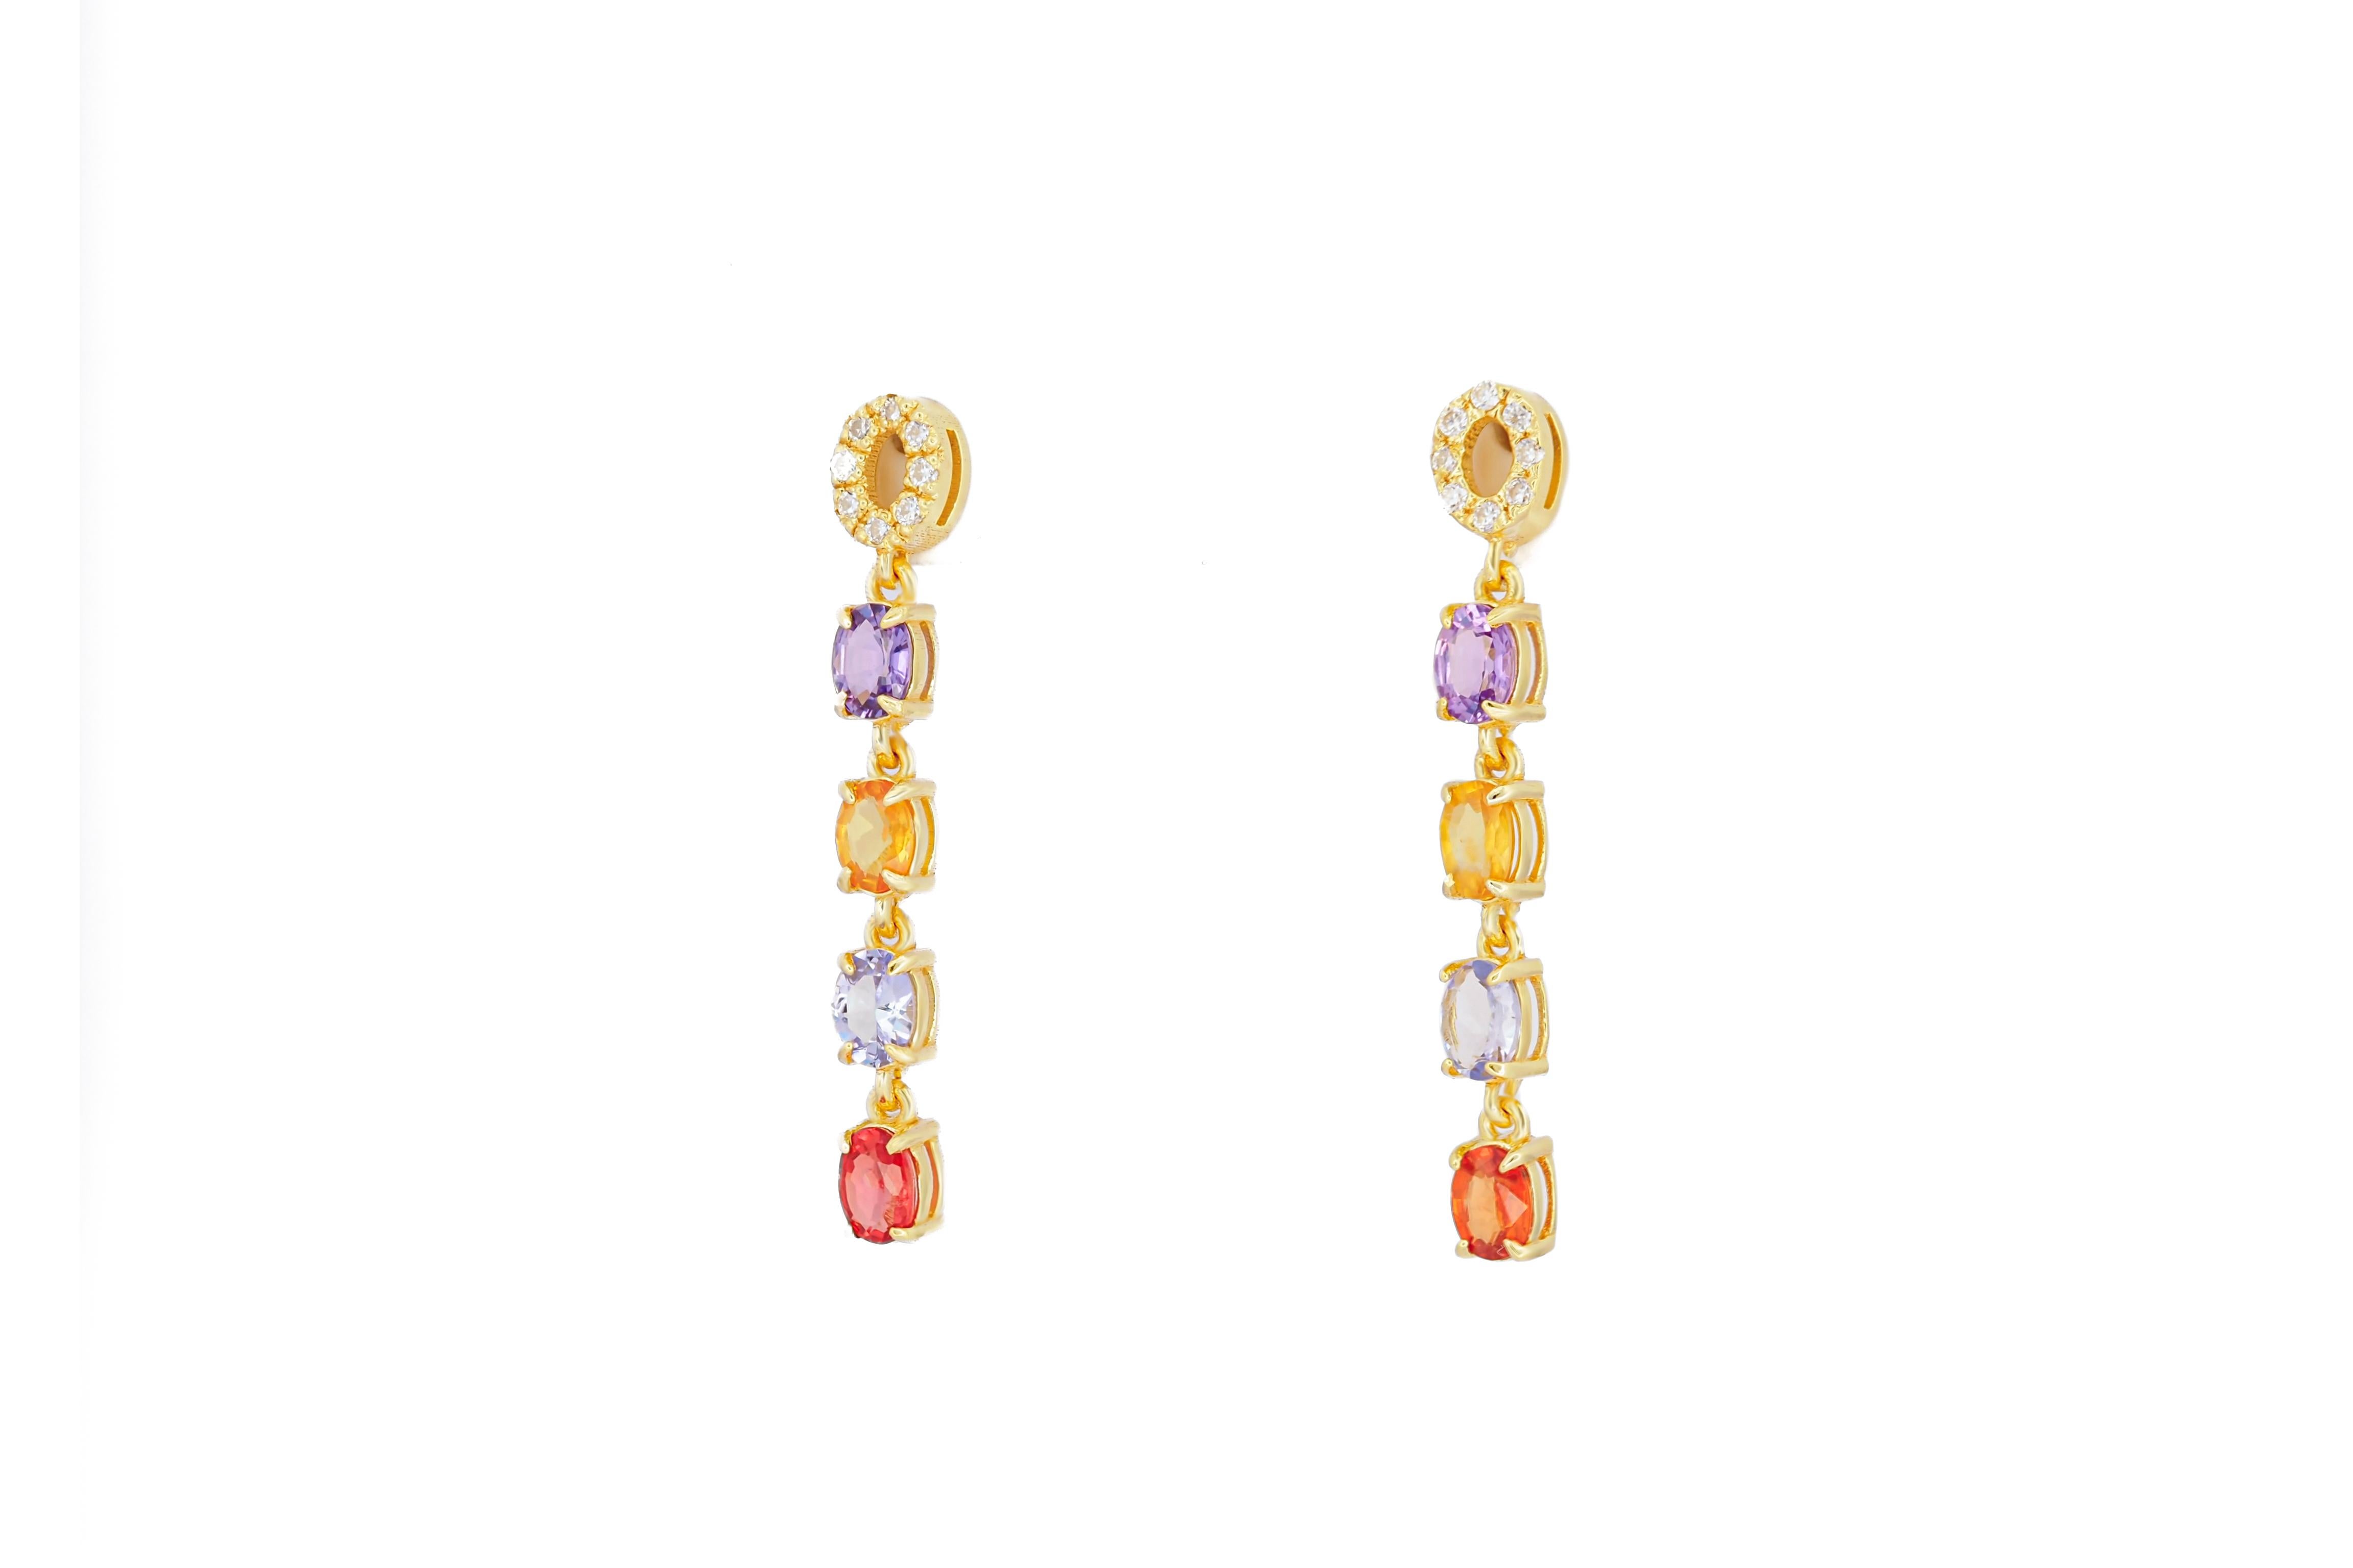 Oval Cut Amethyst, sapphire, tanzanite, diamonds earrings studs in 14k gold.  For Sale